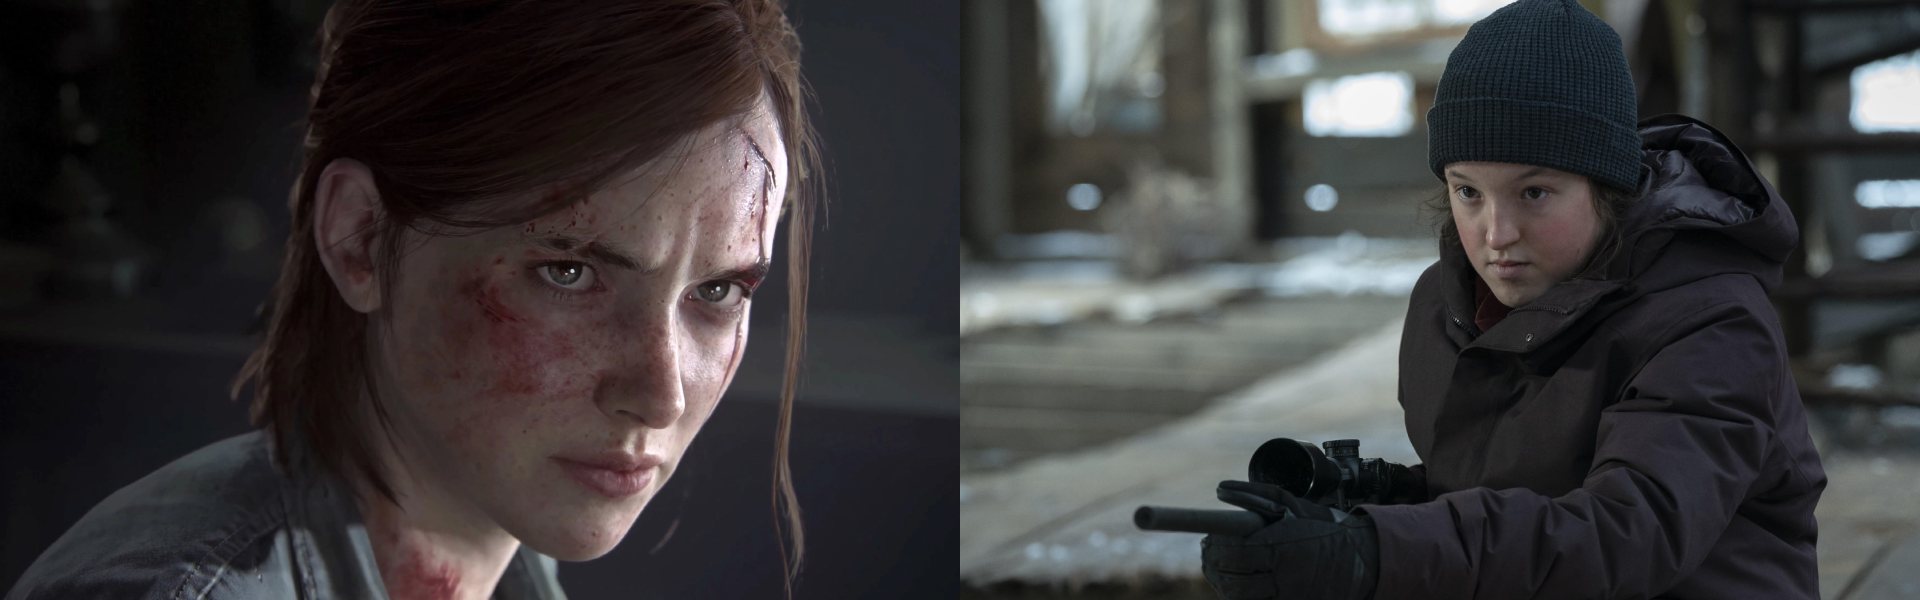 Ellie de The Last of Us no videogame e na série da HBO